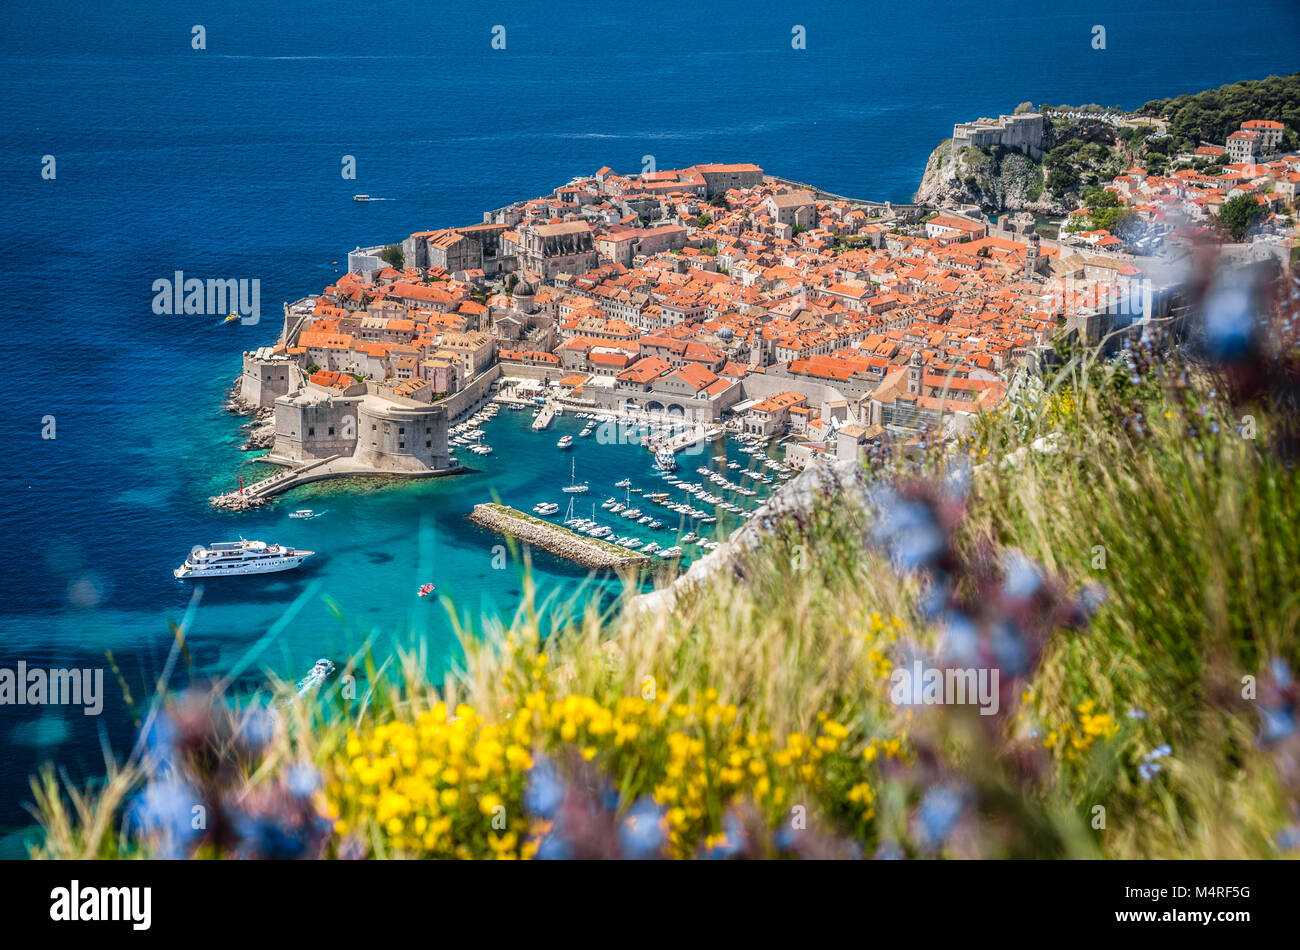 Vista aerea del centro storico di Dubrovnik, una delle più famose destinazioni turistiche del Mar Mediterraneo, dal monte Srd, Croazia Foto Stock